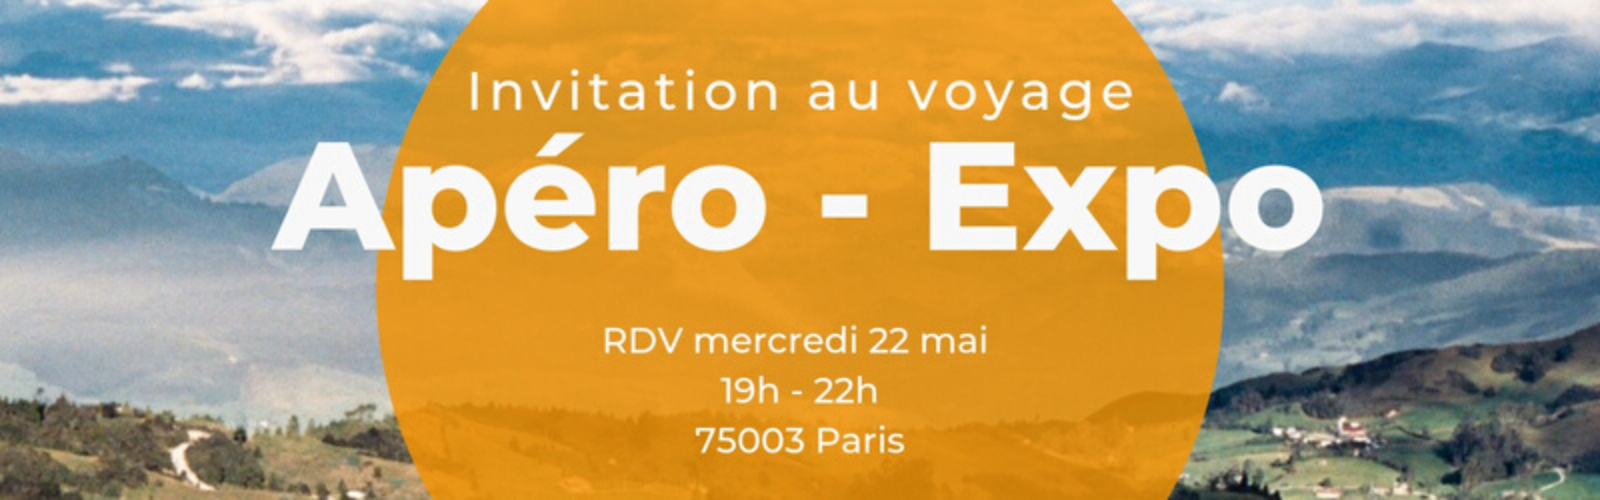 Apéro-expo : invitation au voyage !  Double Sens